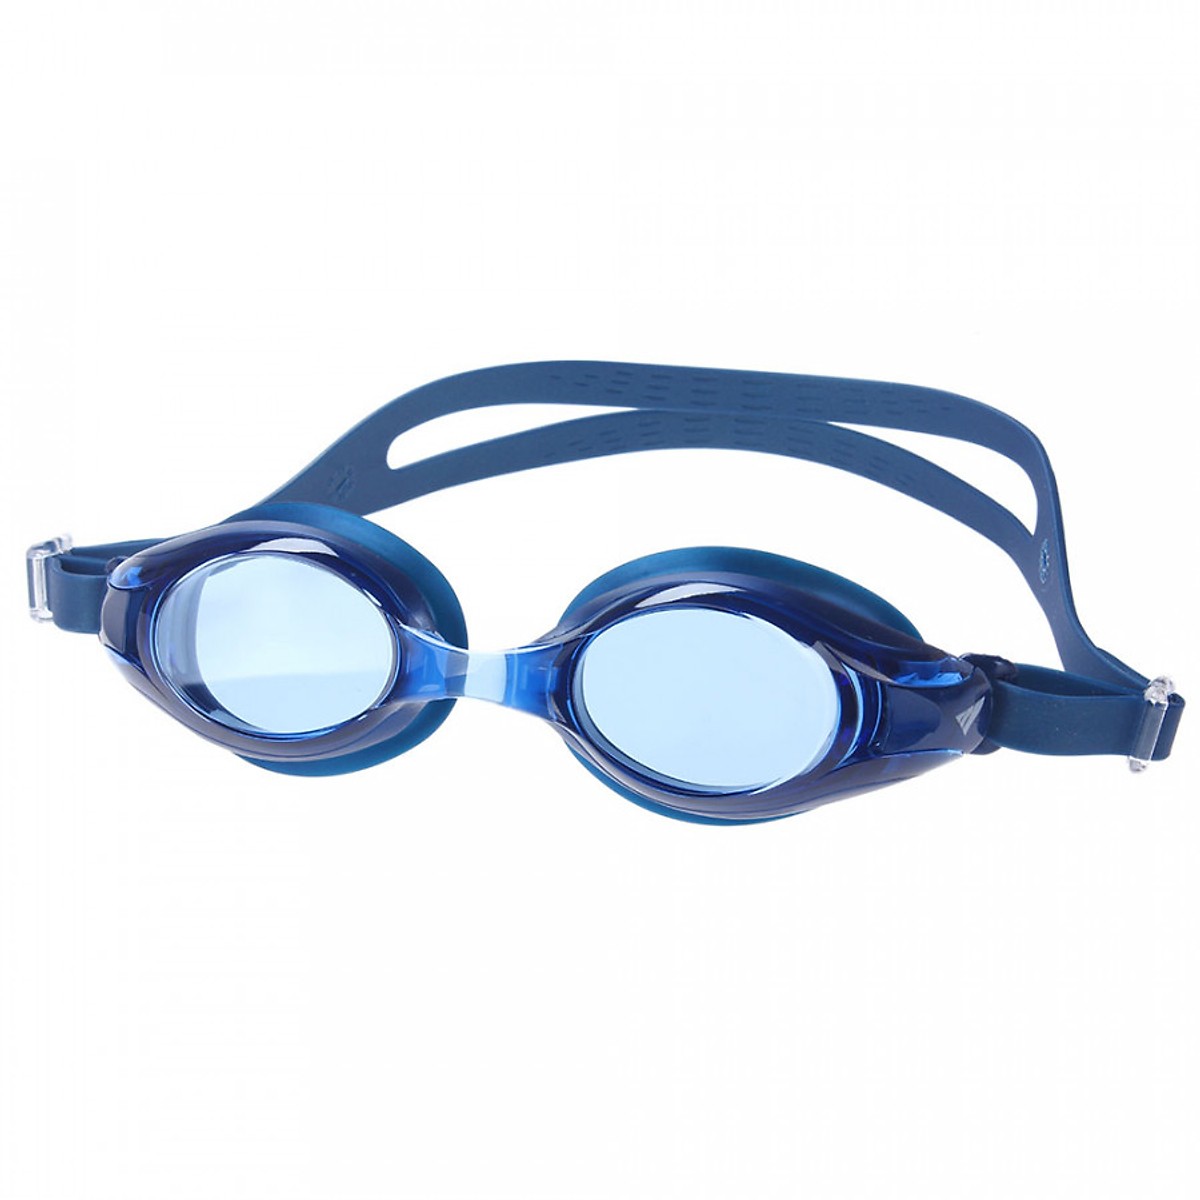 kính bơi Nhật Bản hiệu View V500S-BL (Xanh dương đậm) - Hàng chính hãng 100% sản xuất tại Nhật Bản